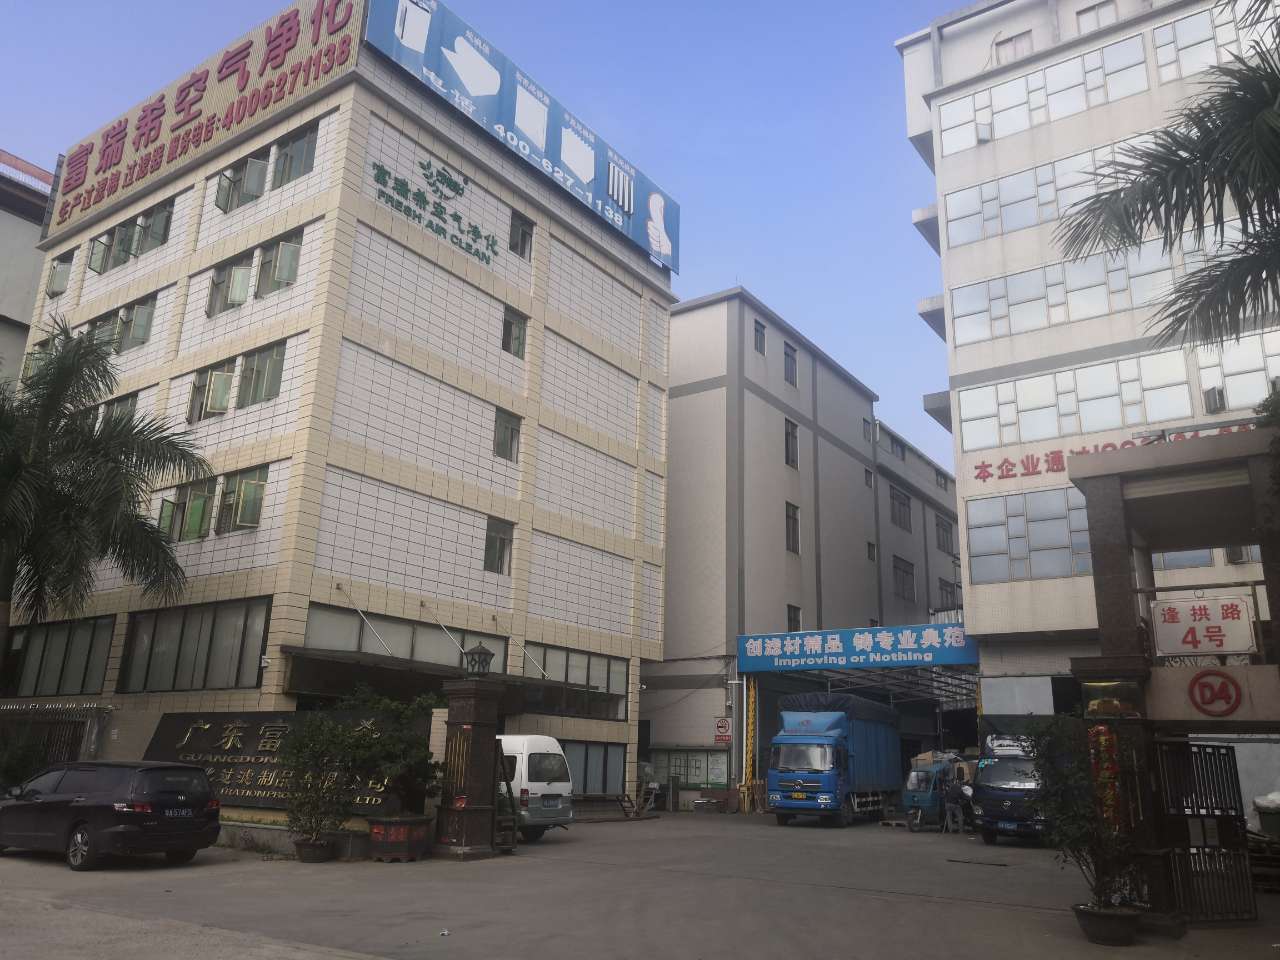     Guangzhou Furushi Air Purification Filter Products Co., Ltd